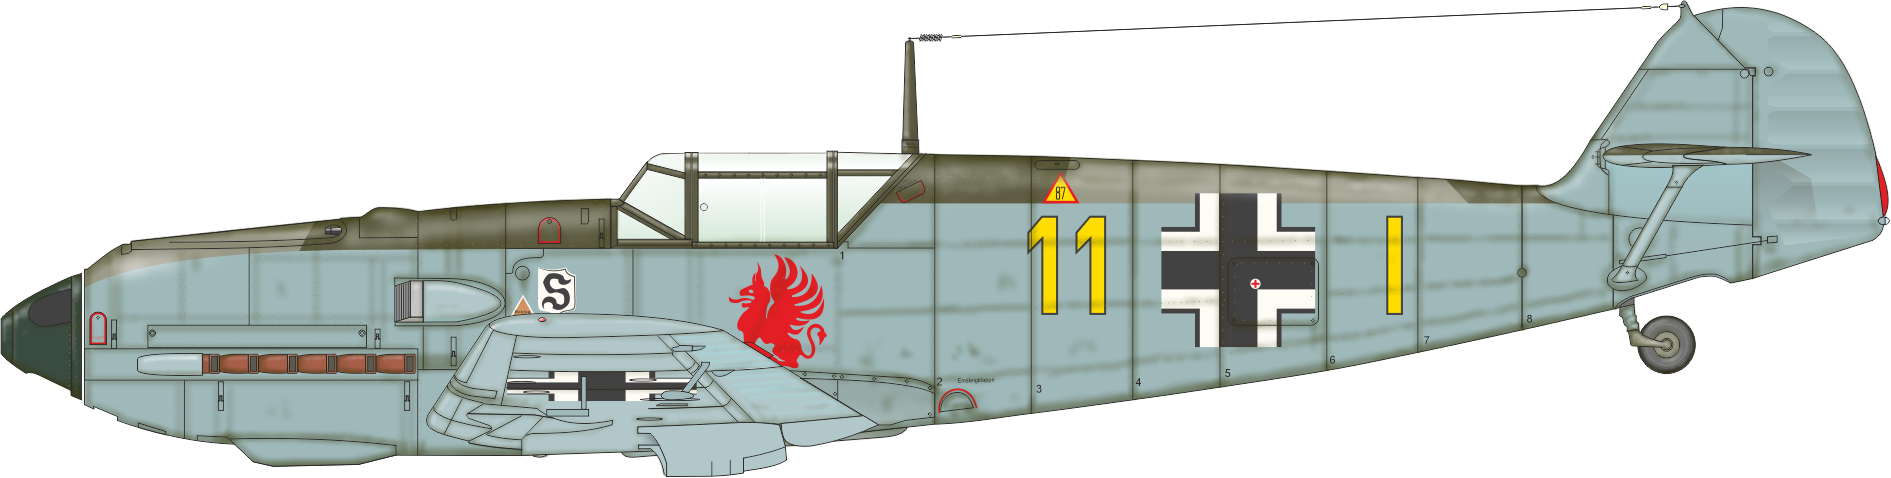 Eduard 1/48 Messerschmitt Bf-109E-1 ProfiPACK Edition Kit # 8261